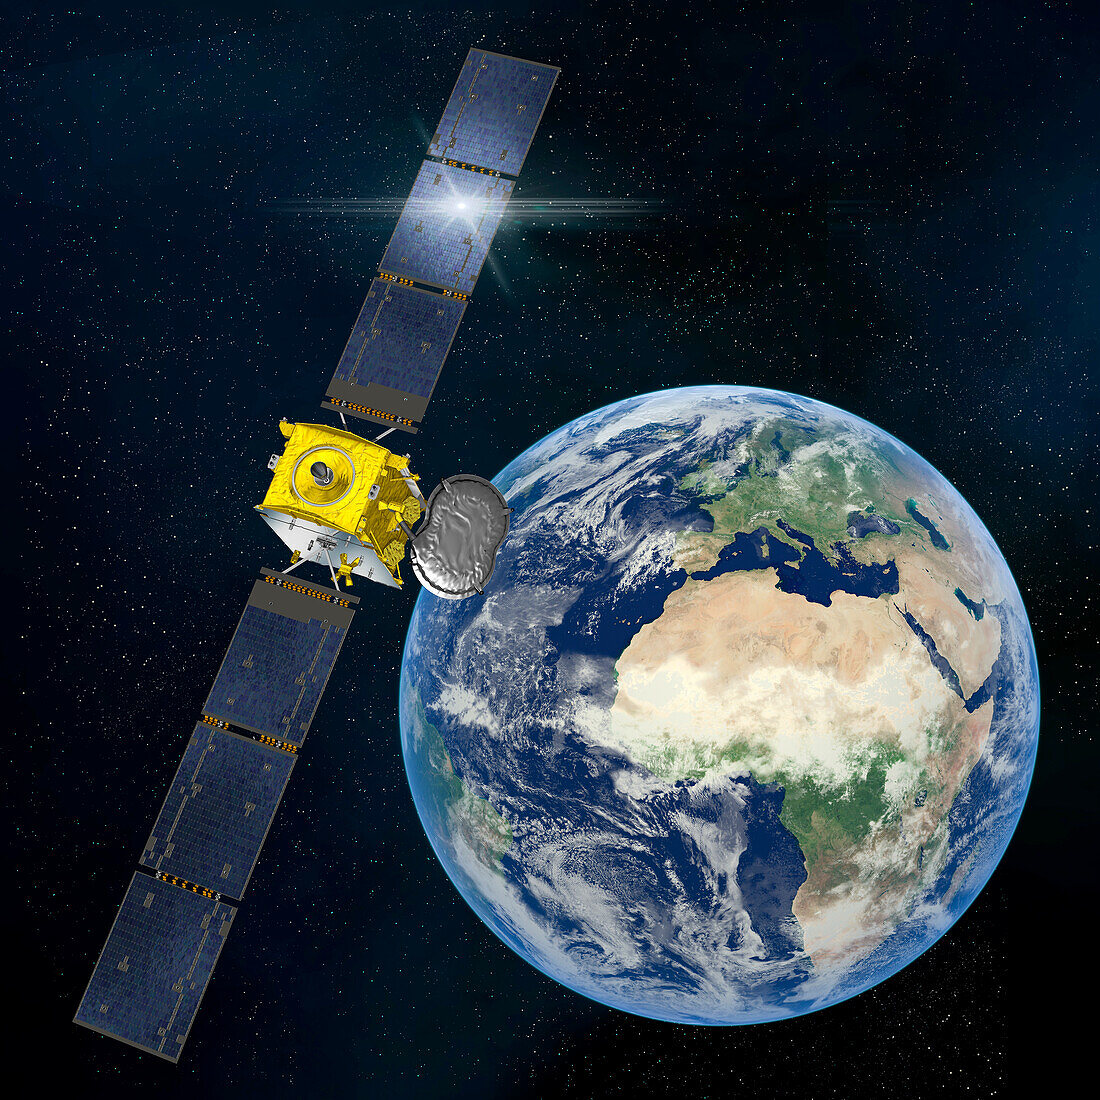 Eutelsat Quantum satellite in orbit, illustration